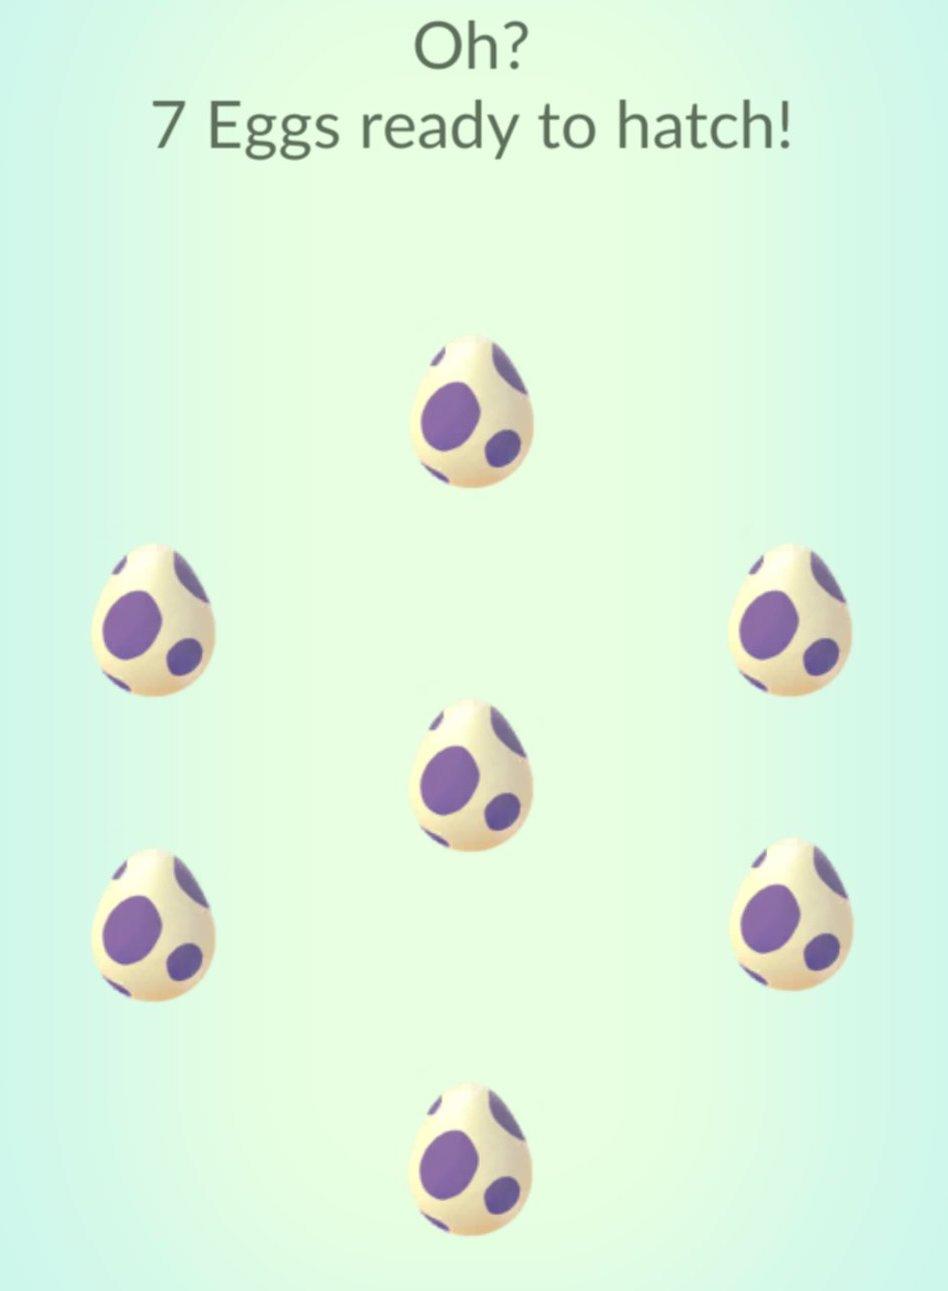 Sette uova pronte a schiudersi in 